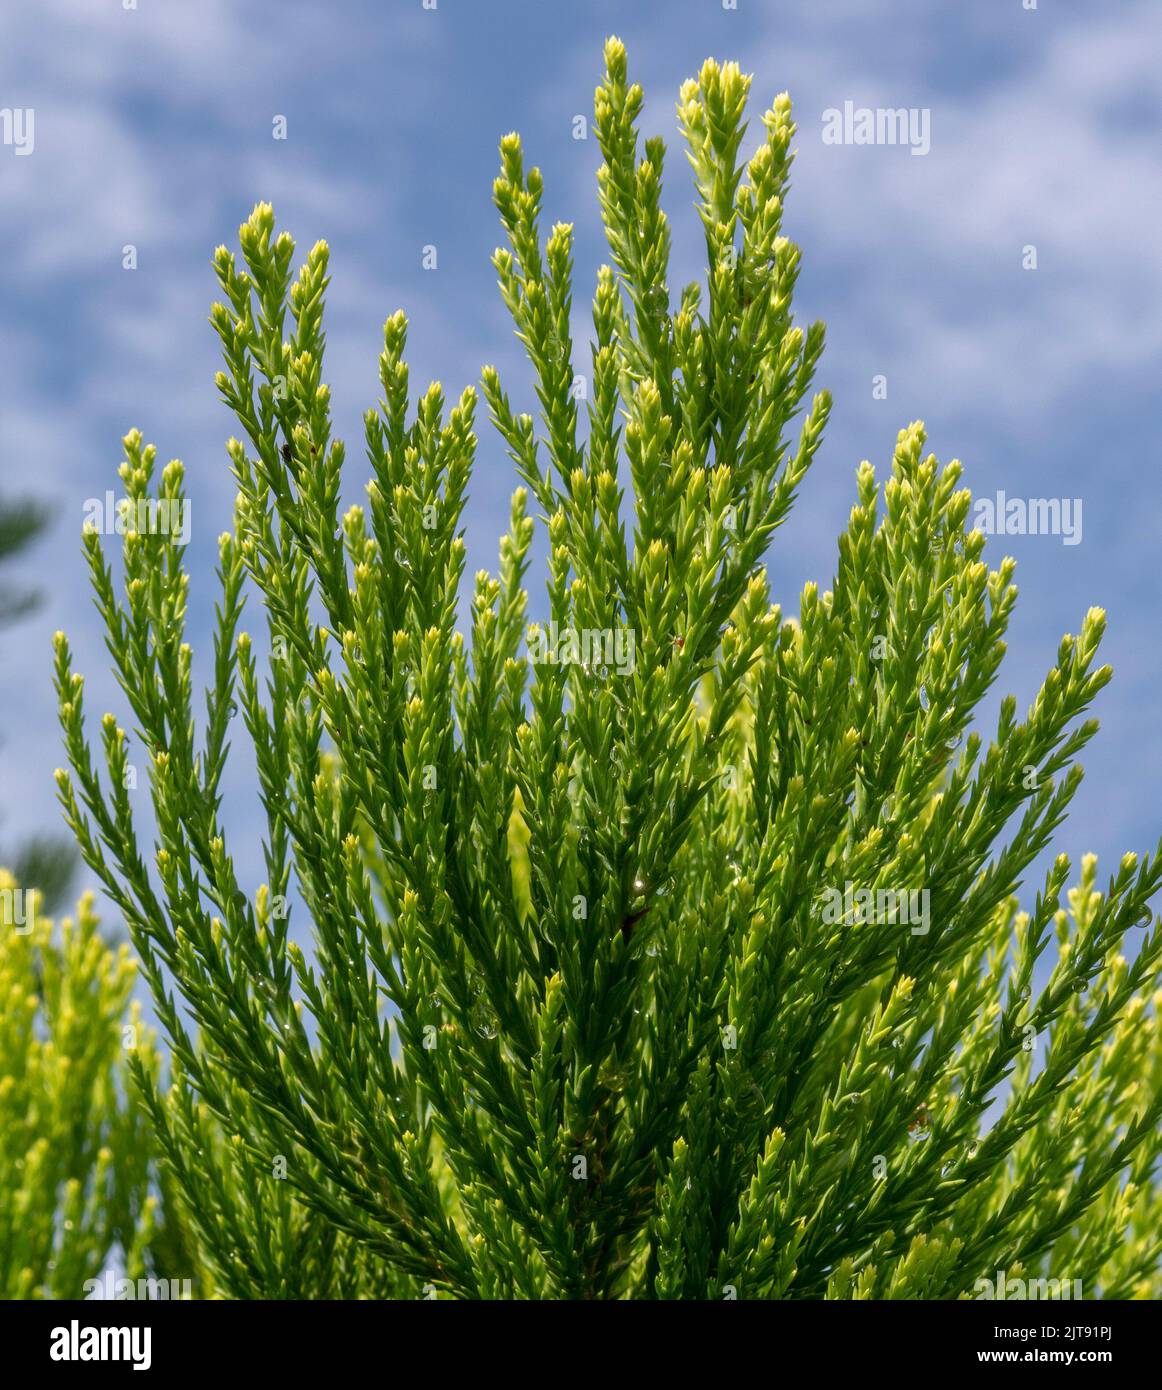 Riesige Mammutbäume, grüne Blätter und Zweige. Sequoiadendron giganteum oder Sierra Redwood Nadeln. Nahaufnahme. Details. Stockfoto